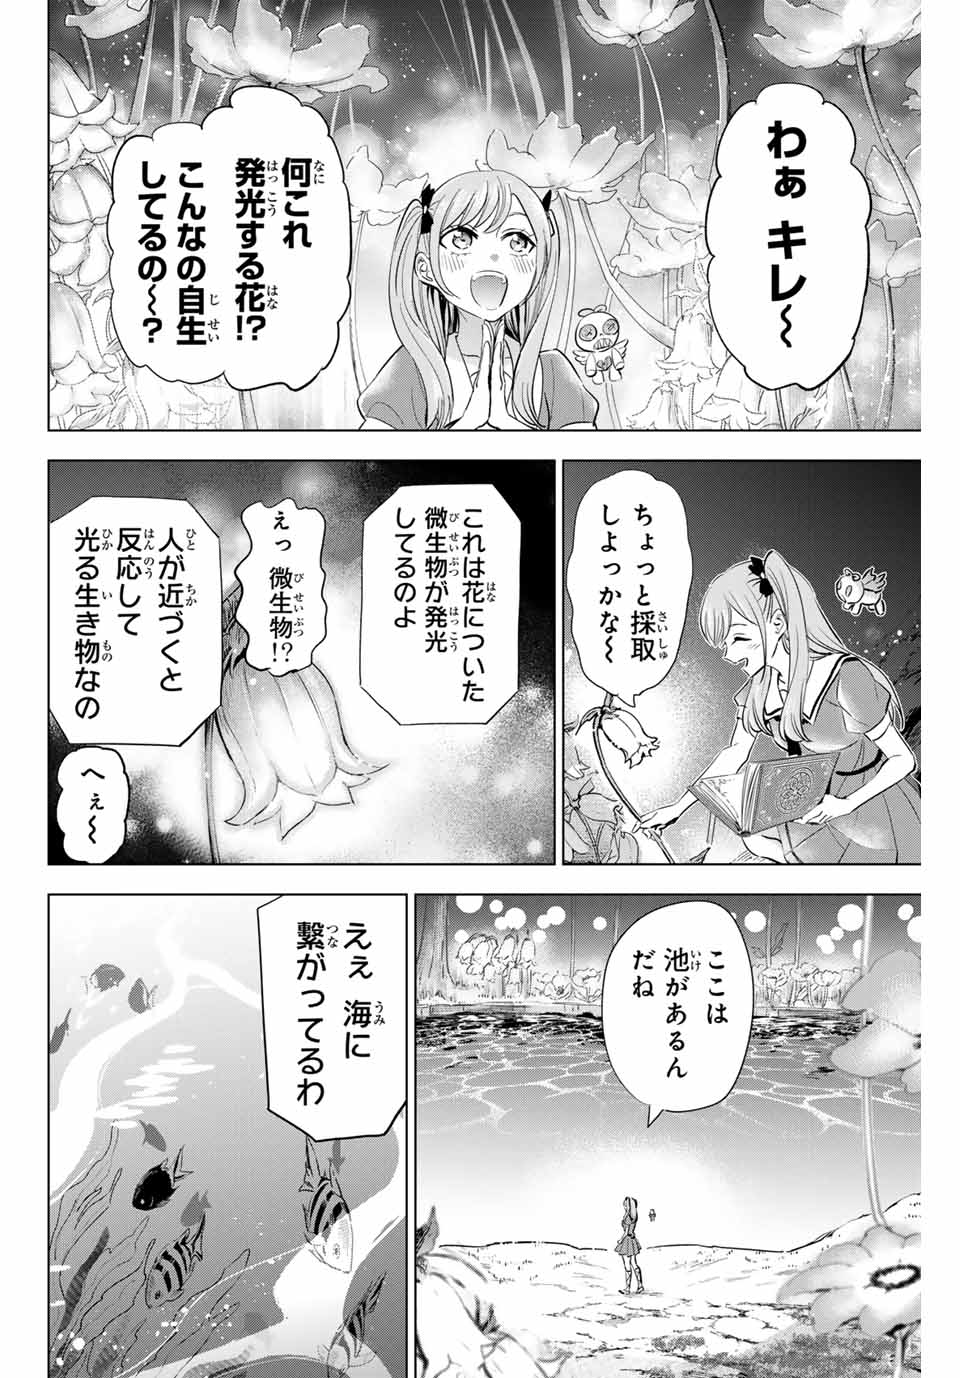 Kuroneko to Majo no Kyoushitsu - Chapter 53 - Page 4